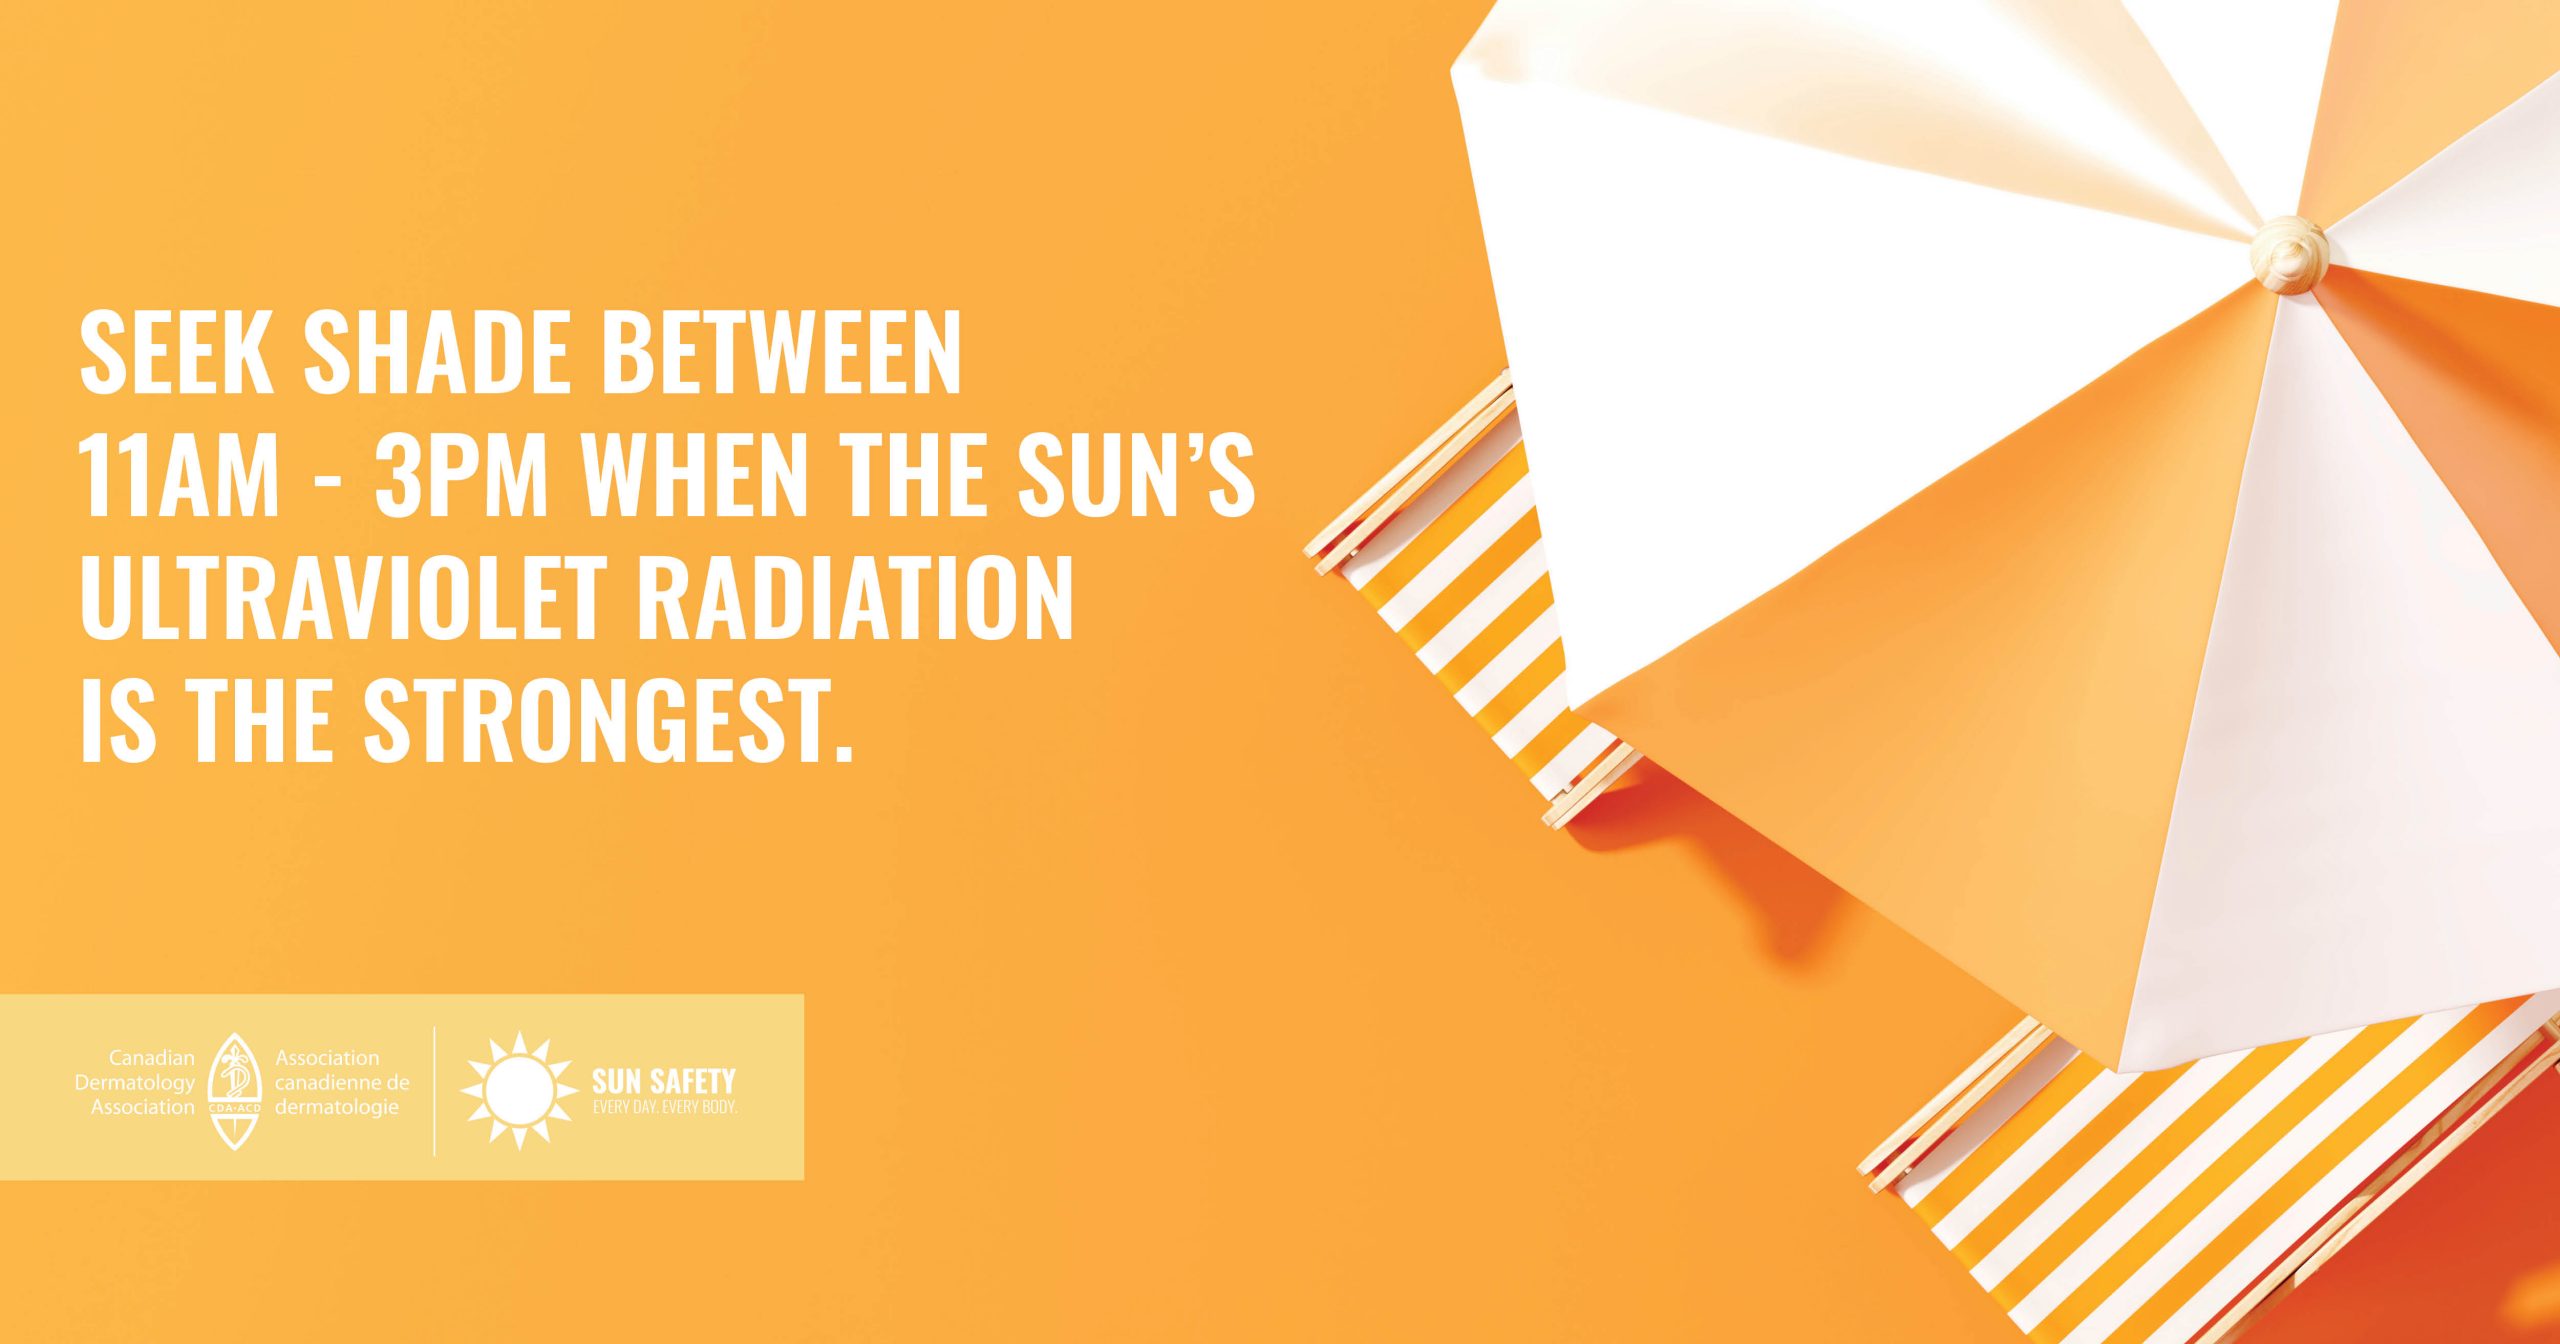 在上午11点到下午3点这段时间，太阳紫外线辐射最强的时候，要寻找阴凉处。